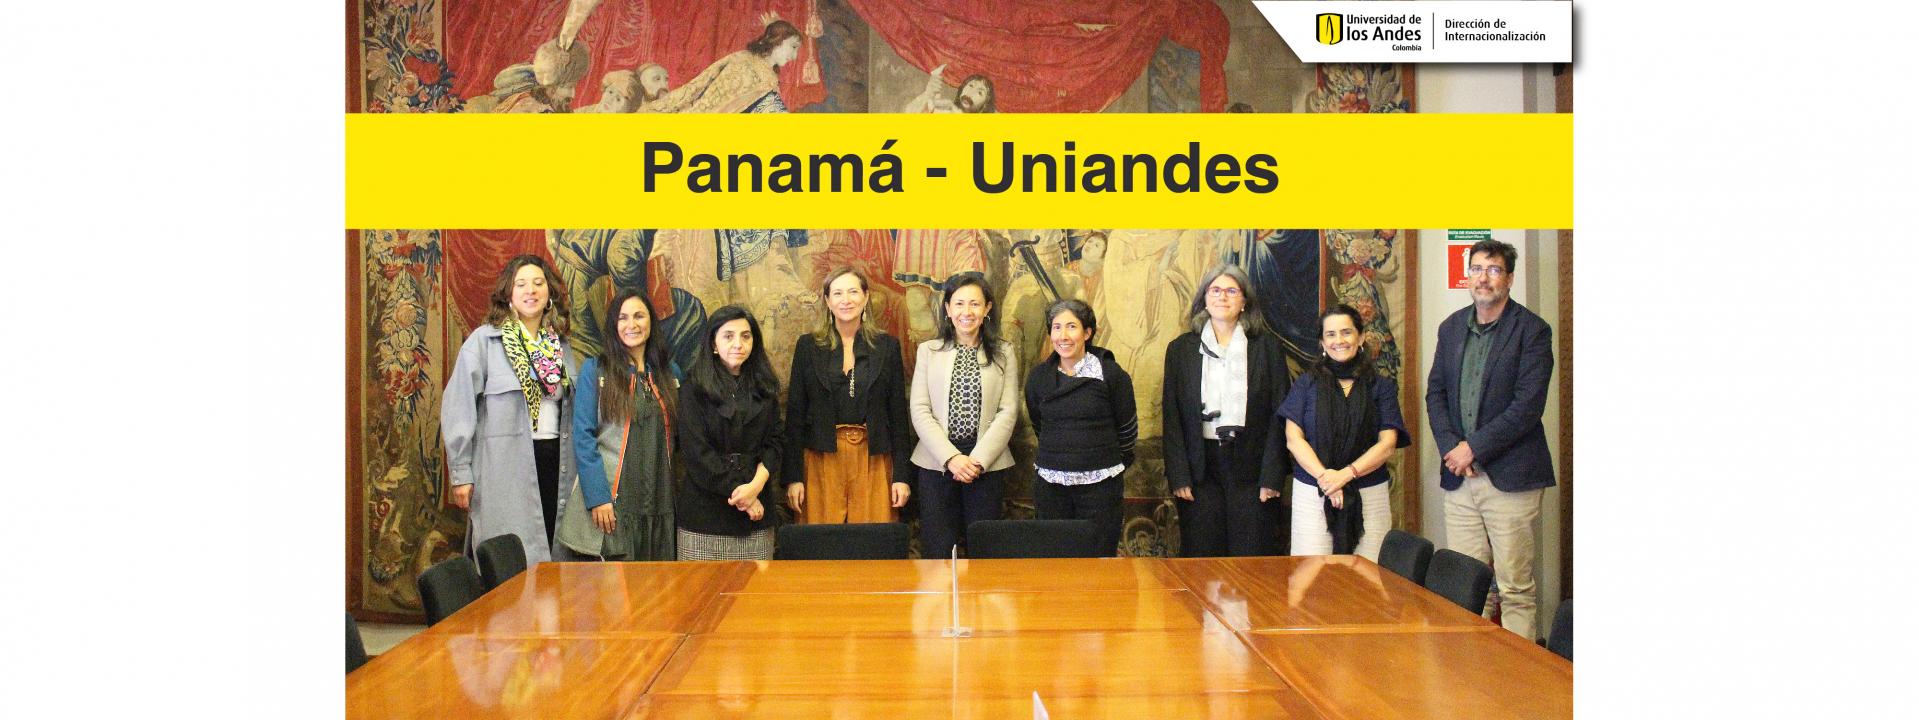 Colaboración Cultural y de Investigación Uniandes - Panamá